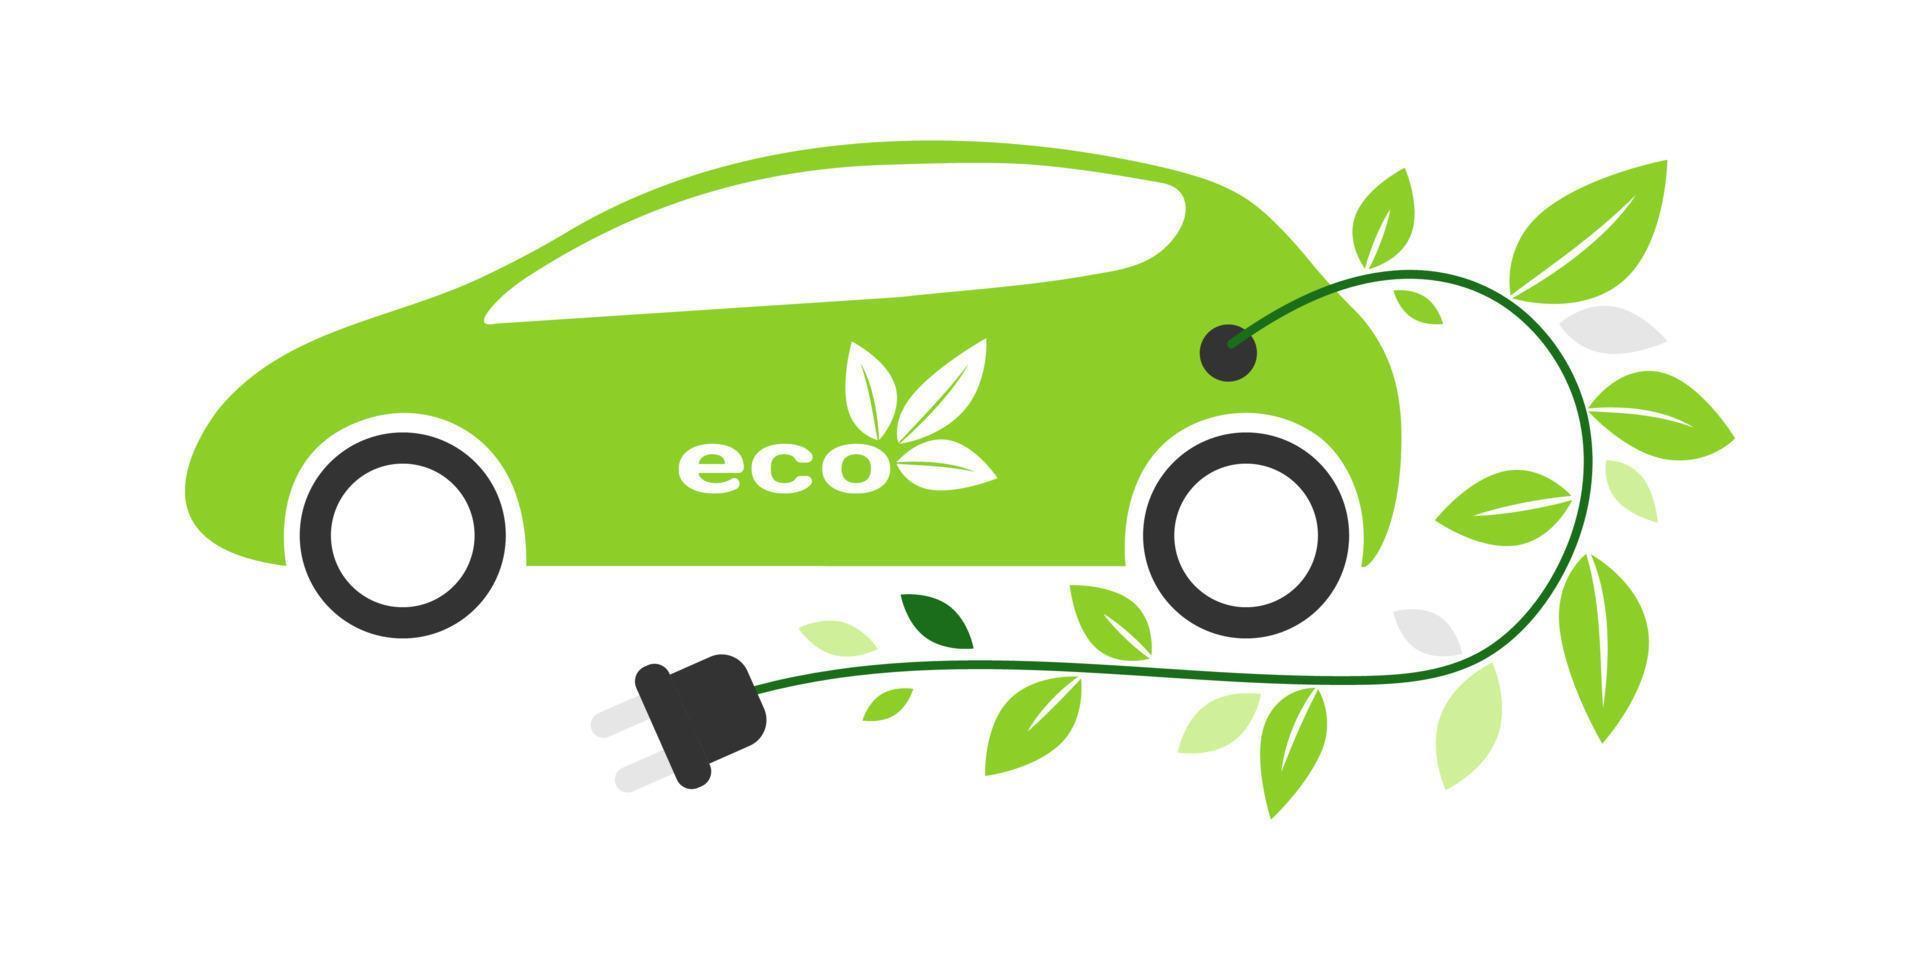 Elektroauto mit Ladekabel. umweltfreundlicher transport, elektrofahrzeug. Am Ladekabel wachsen grüne Blätter als Symbol für Zero Emission vektor